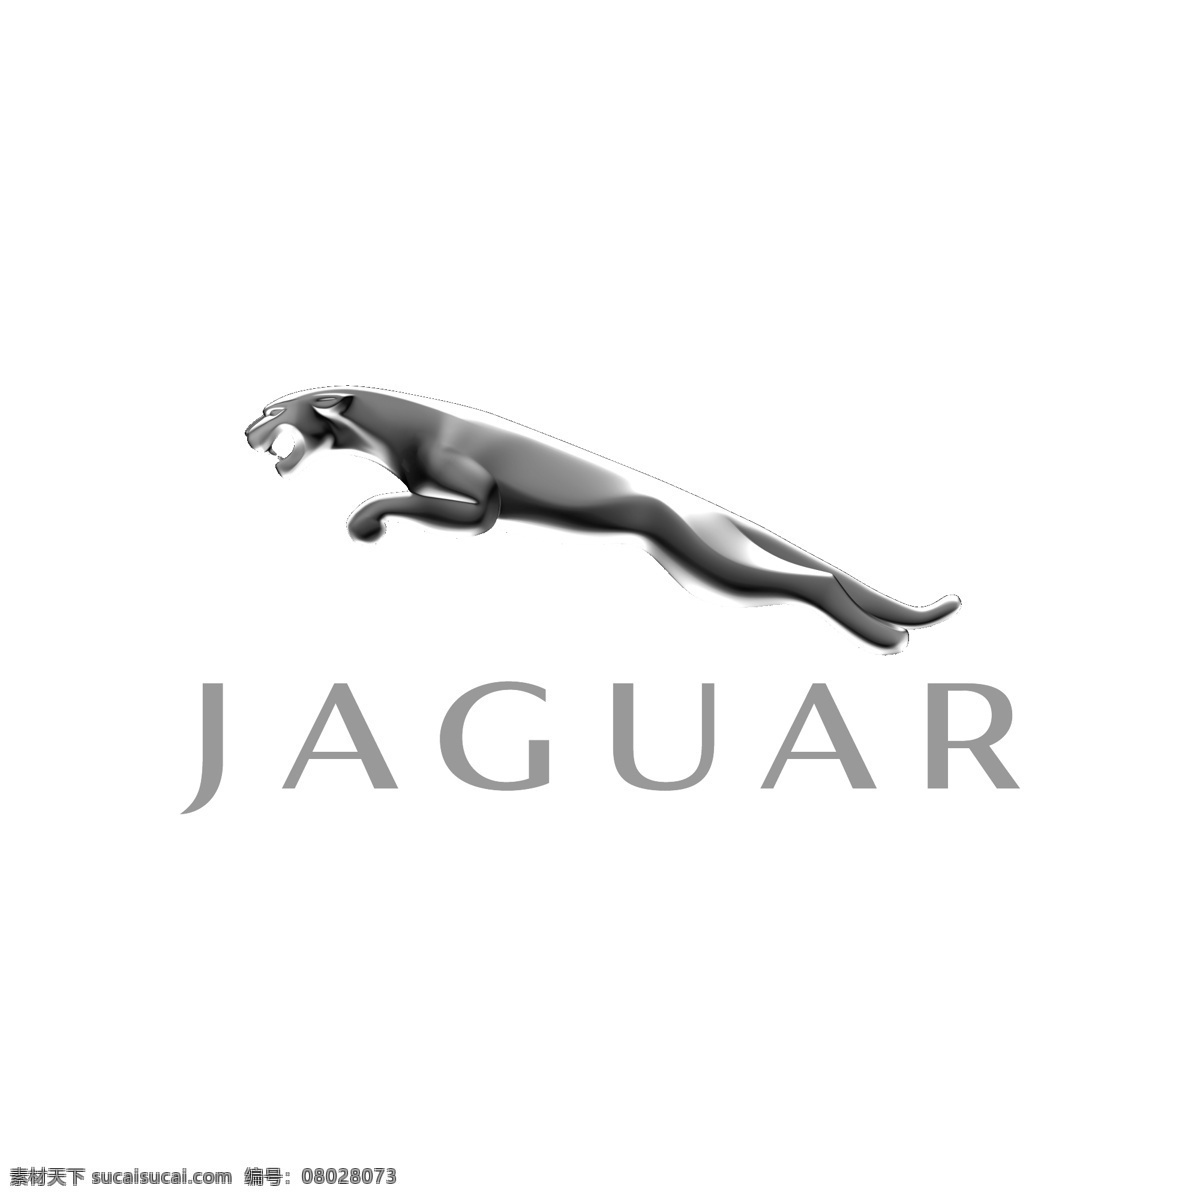 捷豹 jaguar logo 汽车 车 车标 矢量 图形 标准 电动车 行驶 驾驶 驾驶人 开车 代驾 logo集合 标志图标 企业 标志